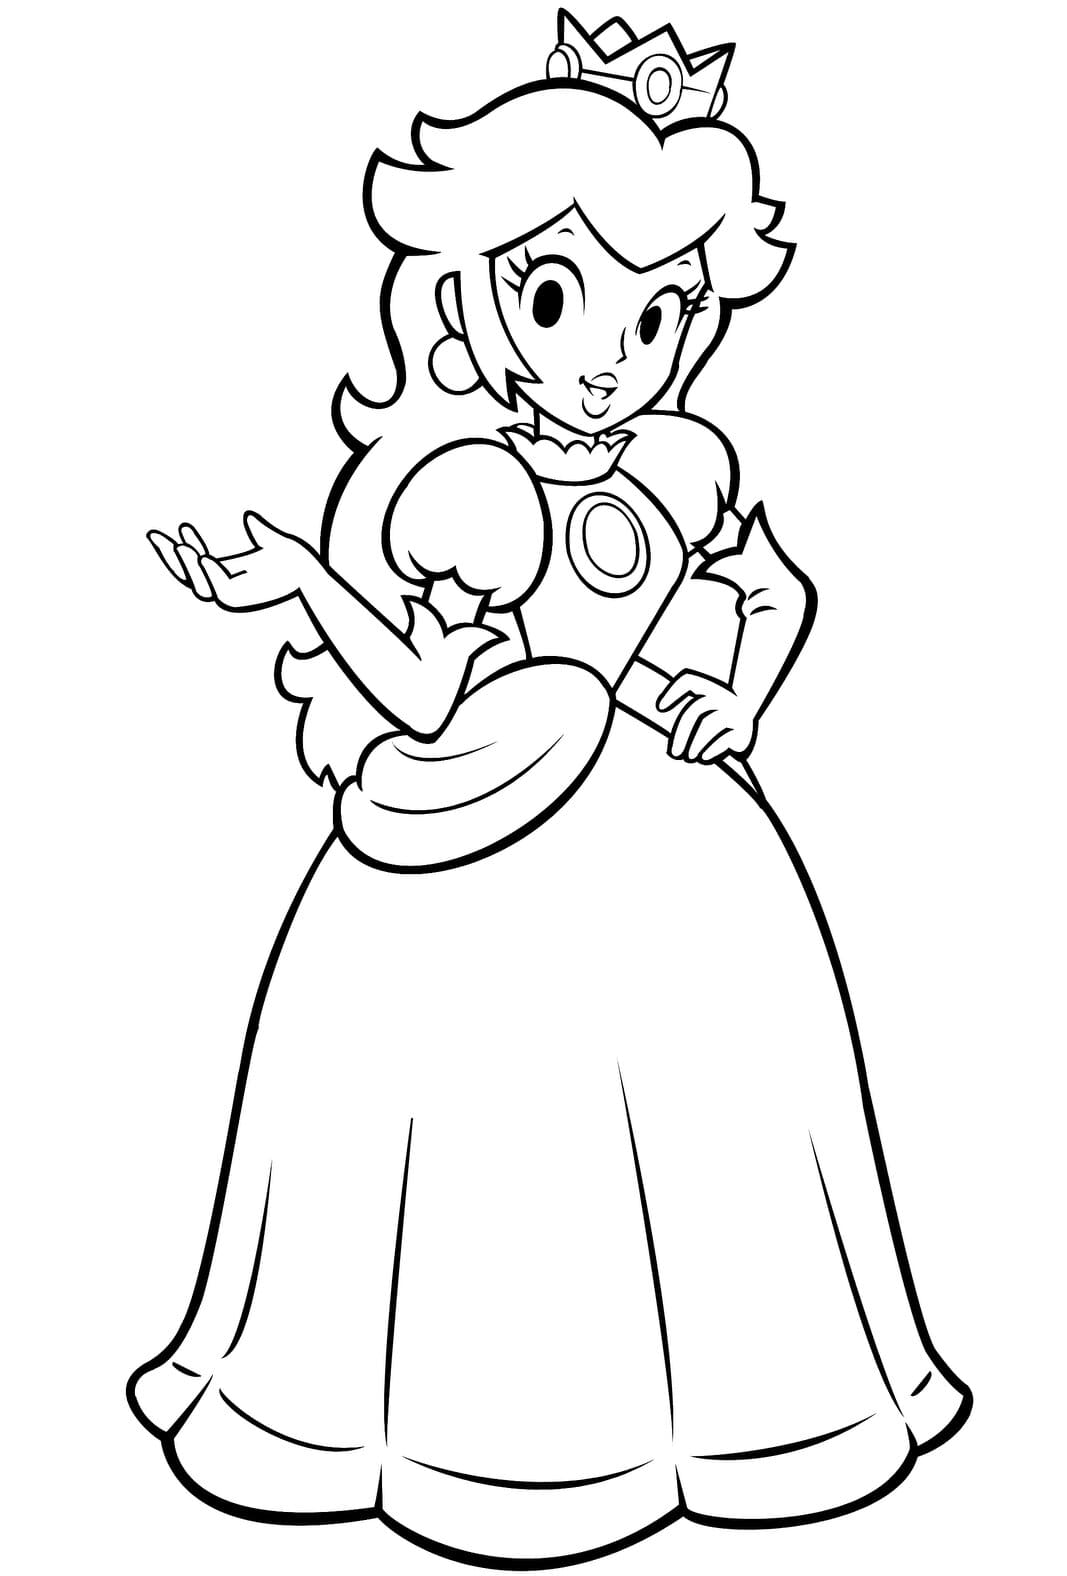 Принцесса Пич поднимает правую руку в Super Mario Bros из мультфильма «Принцесса Пич».